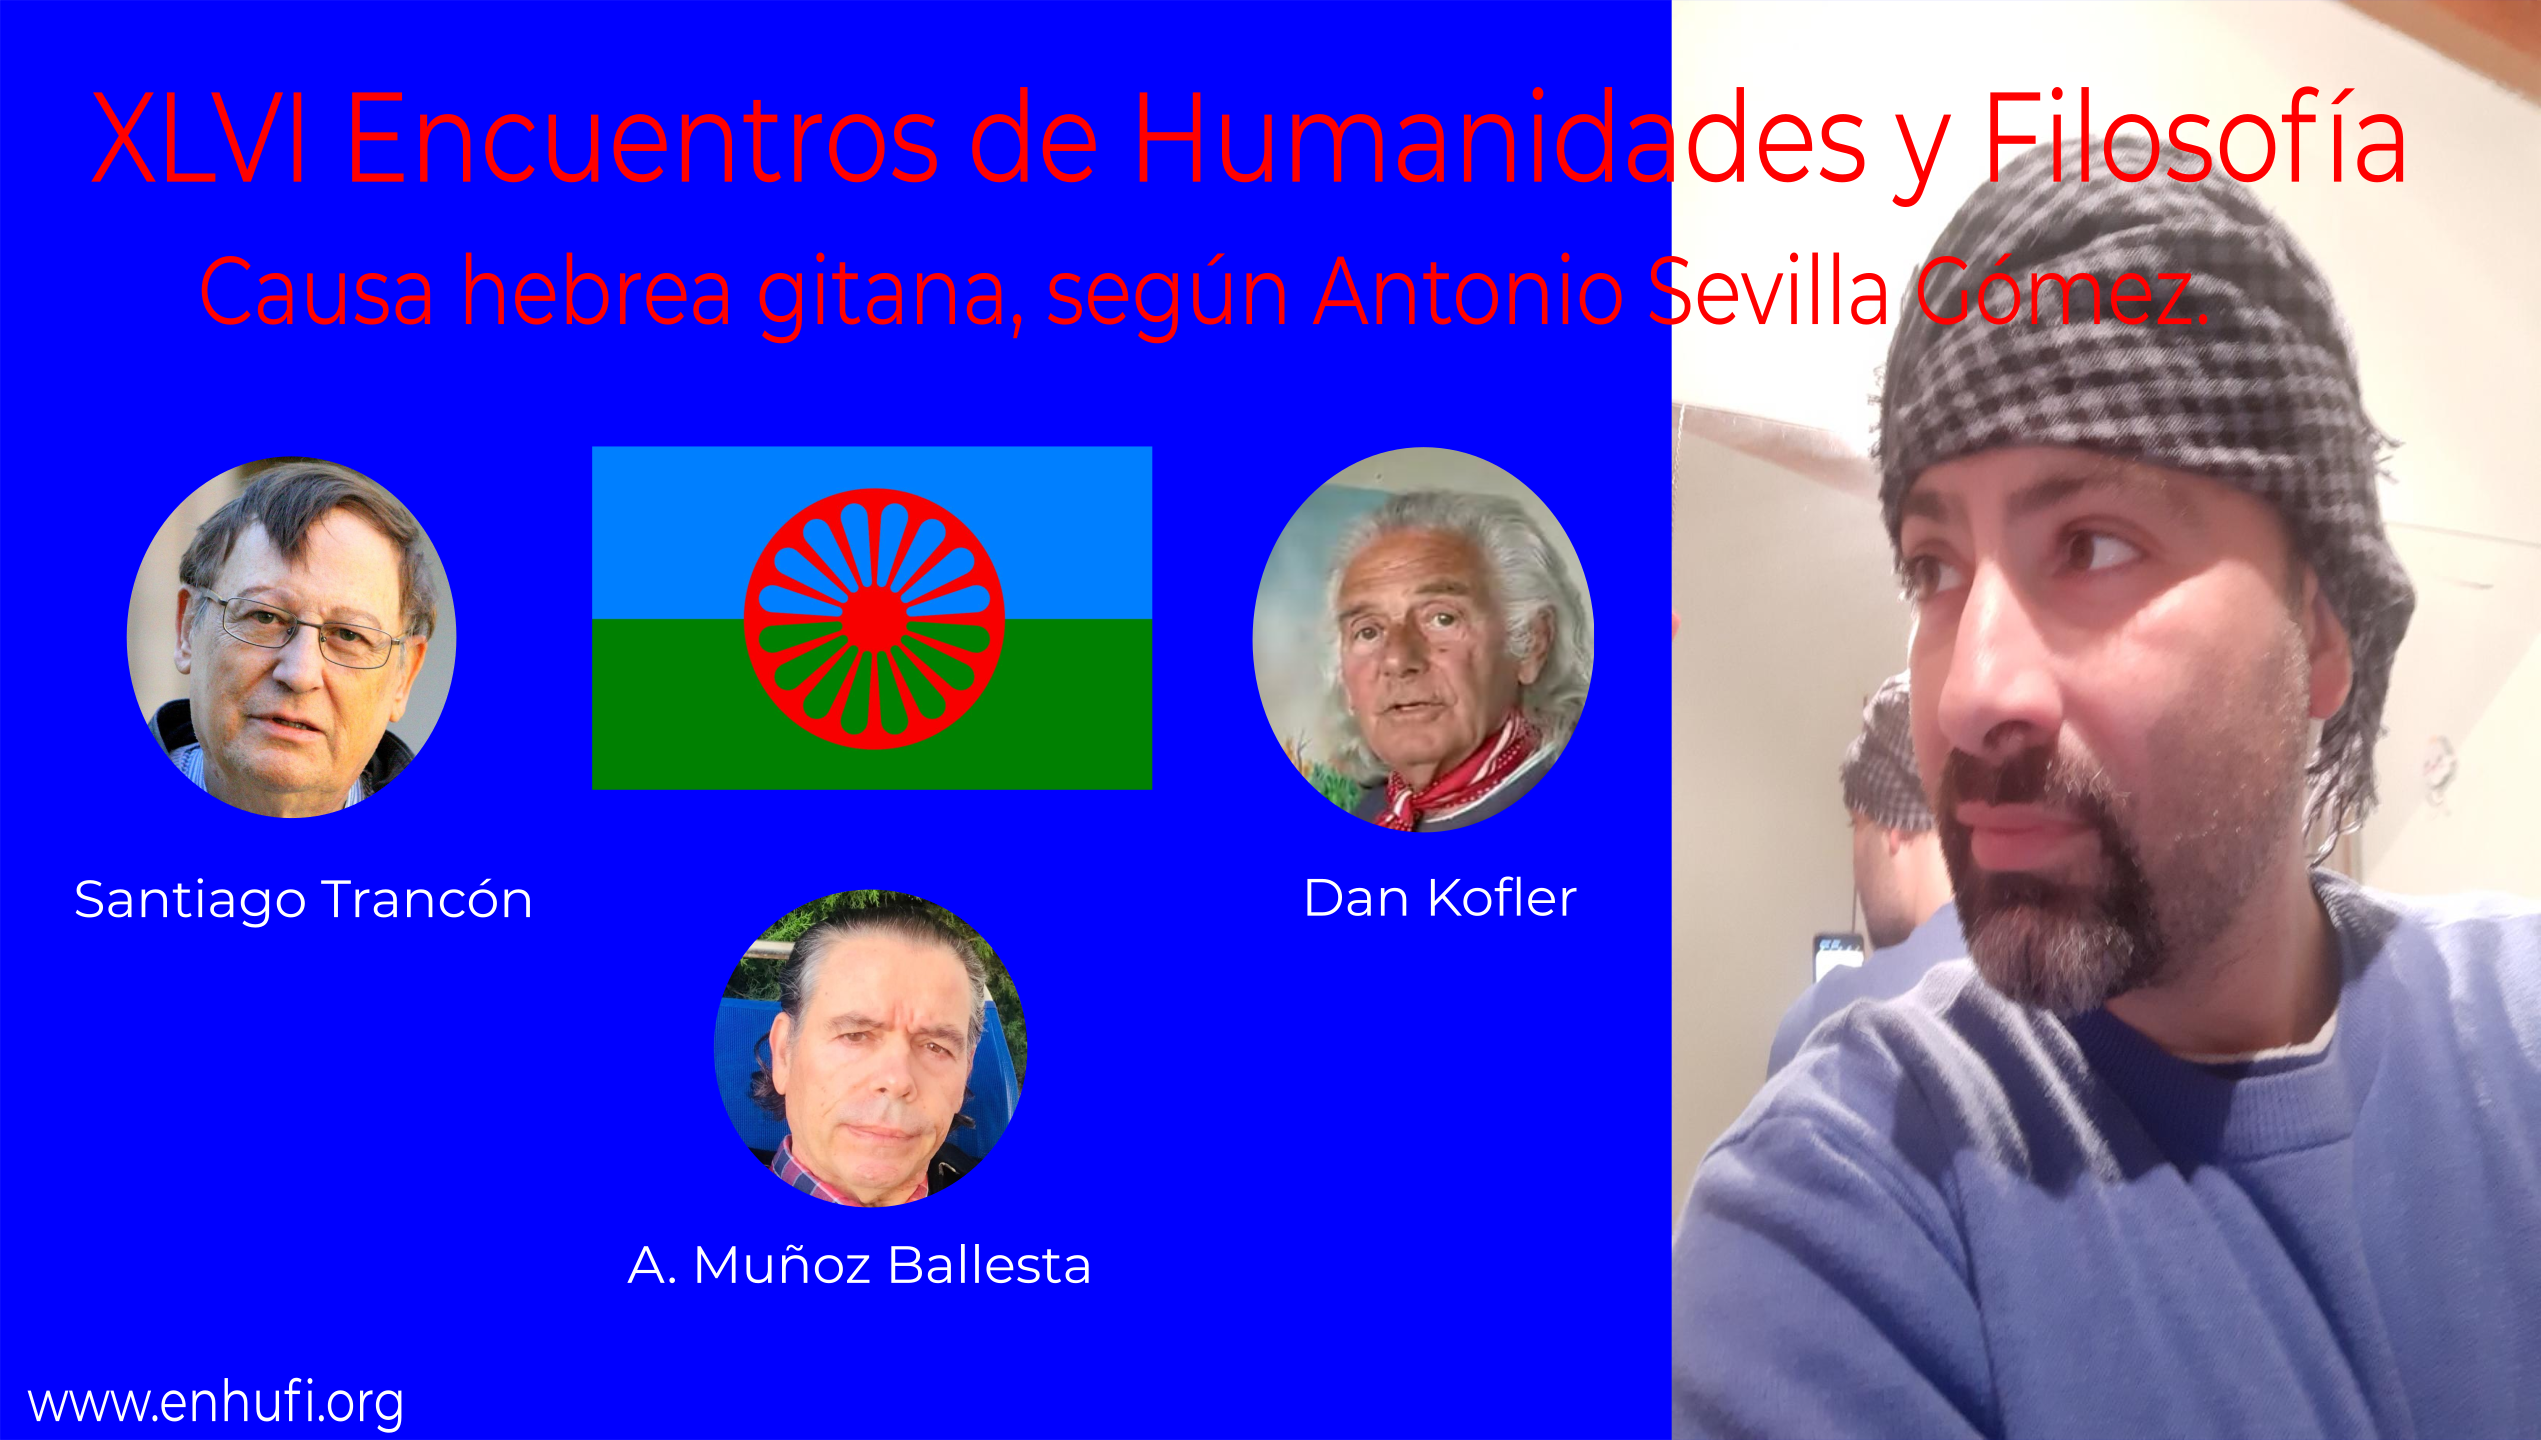 XLV Encuentros de Humanidades y Filosfofía, Literatura y vida, conversación con Rafael Narbona.